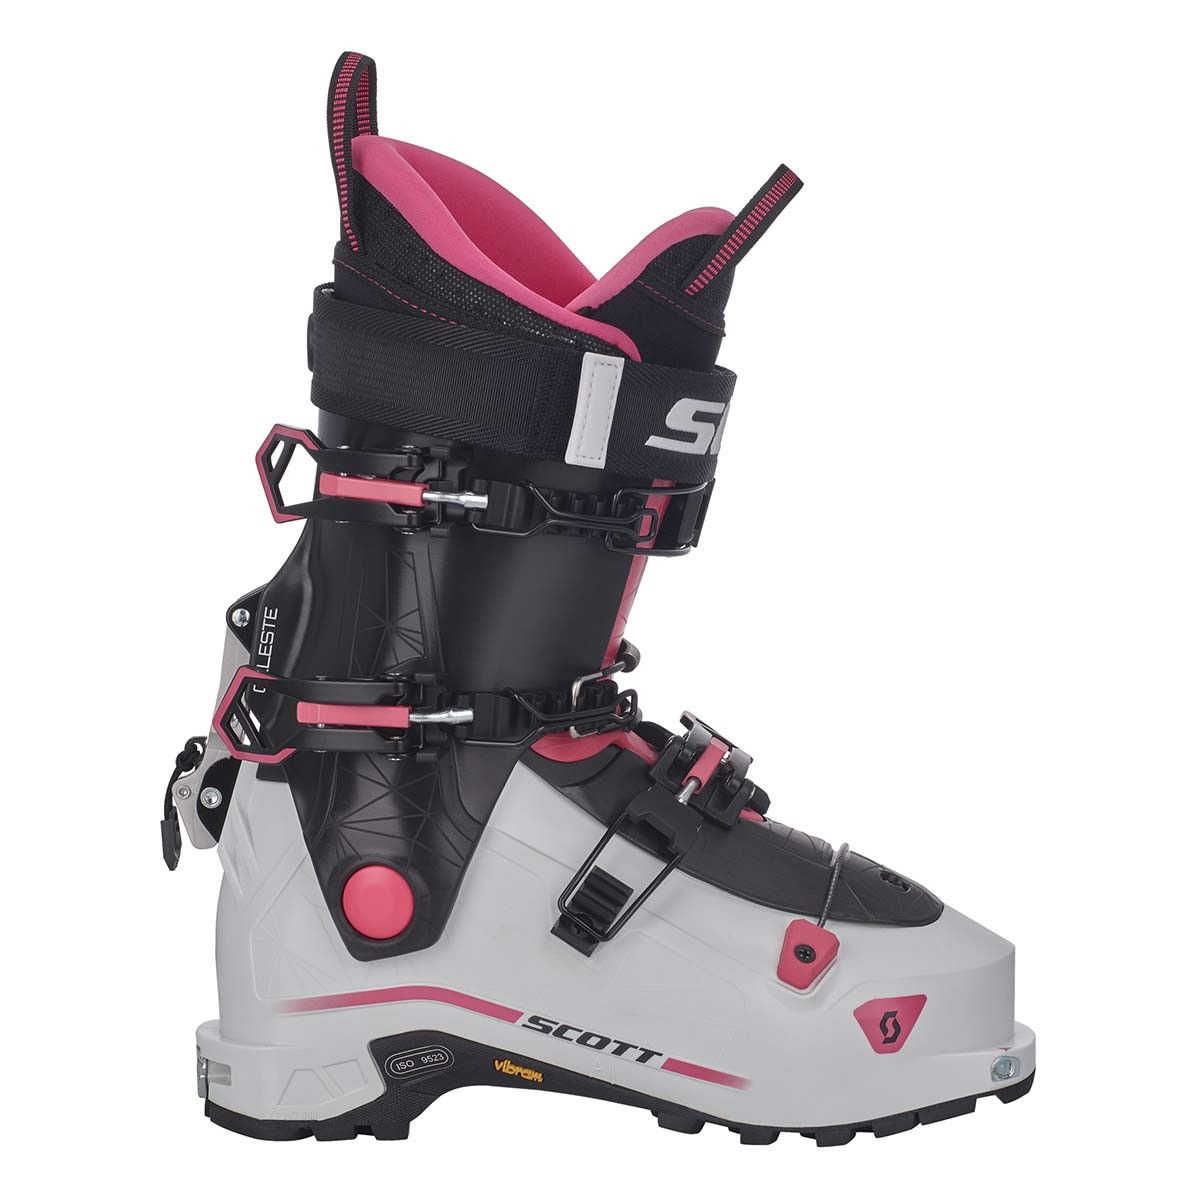  Scarponi Alpinismo Scott Celeste (Colore: bianco nero rosa, Taglia: 25.5) 